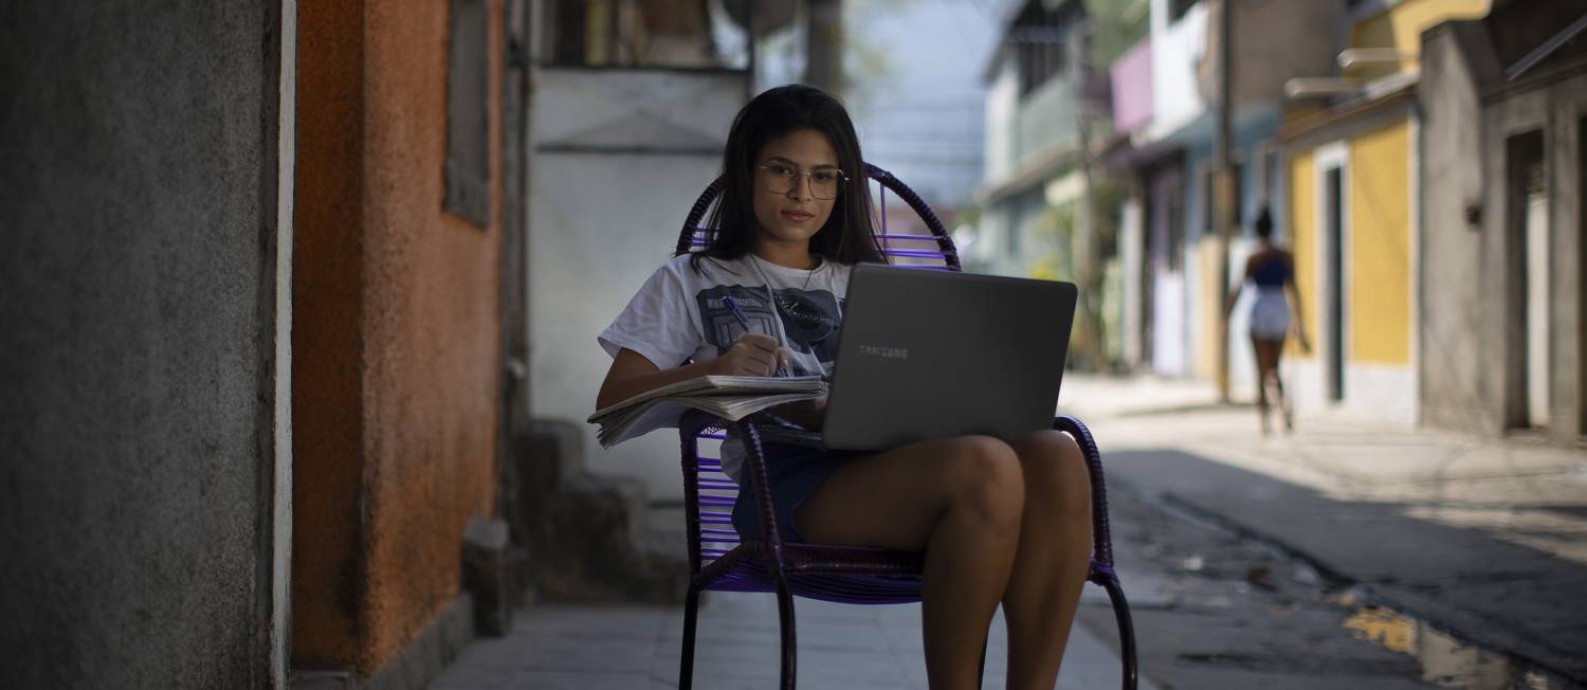 Moradora da Vila Kennedy, Jiuliana França, 16 anos, é grata por pelo menos ter computador e acesso a internet Foto: Márcia Foletto / Agência O Globo